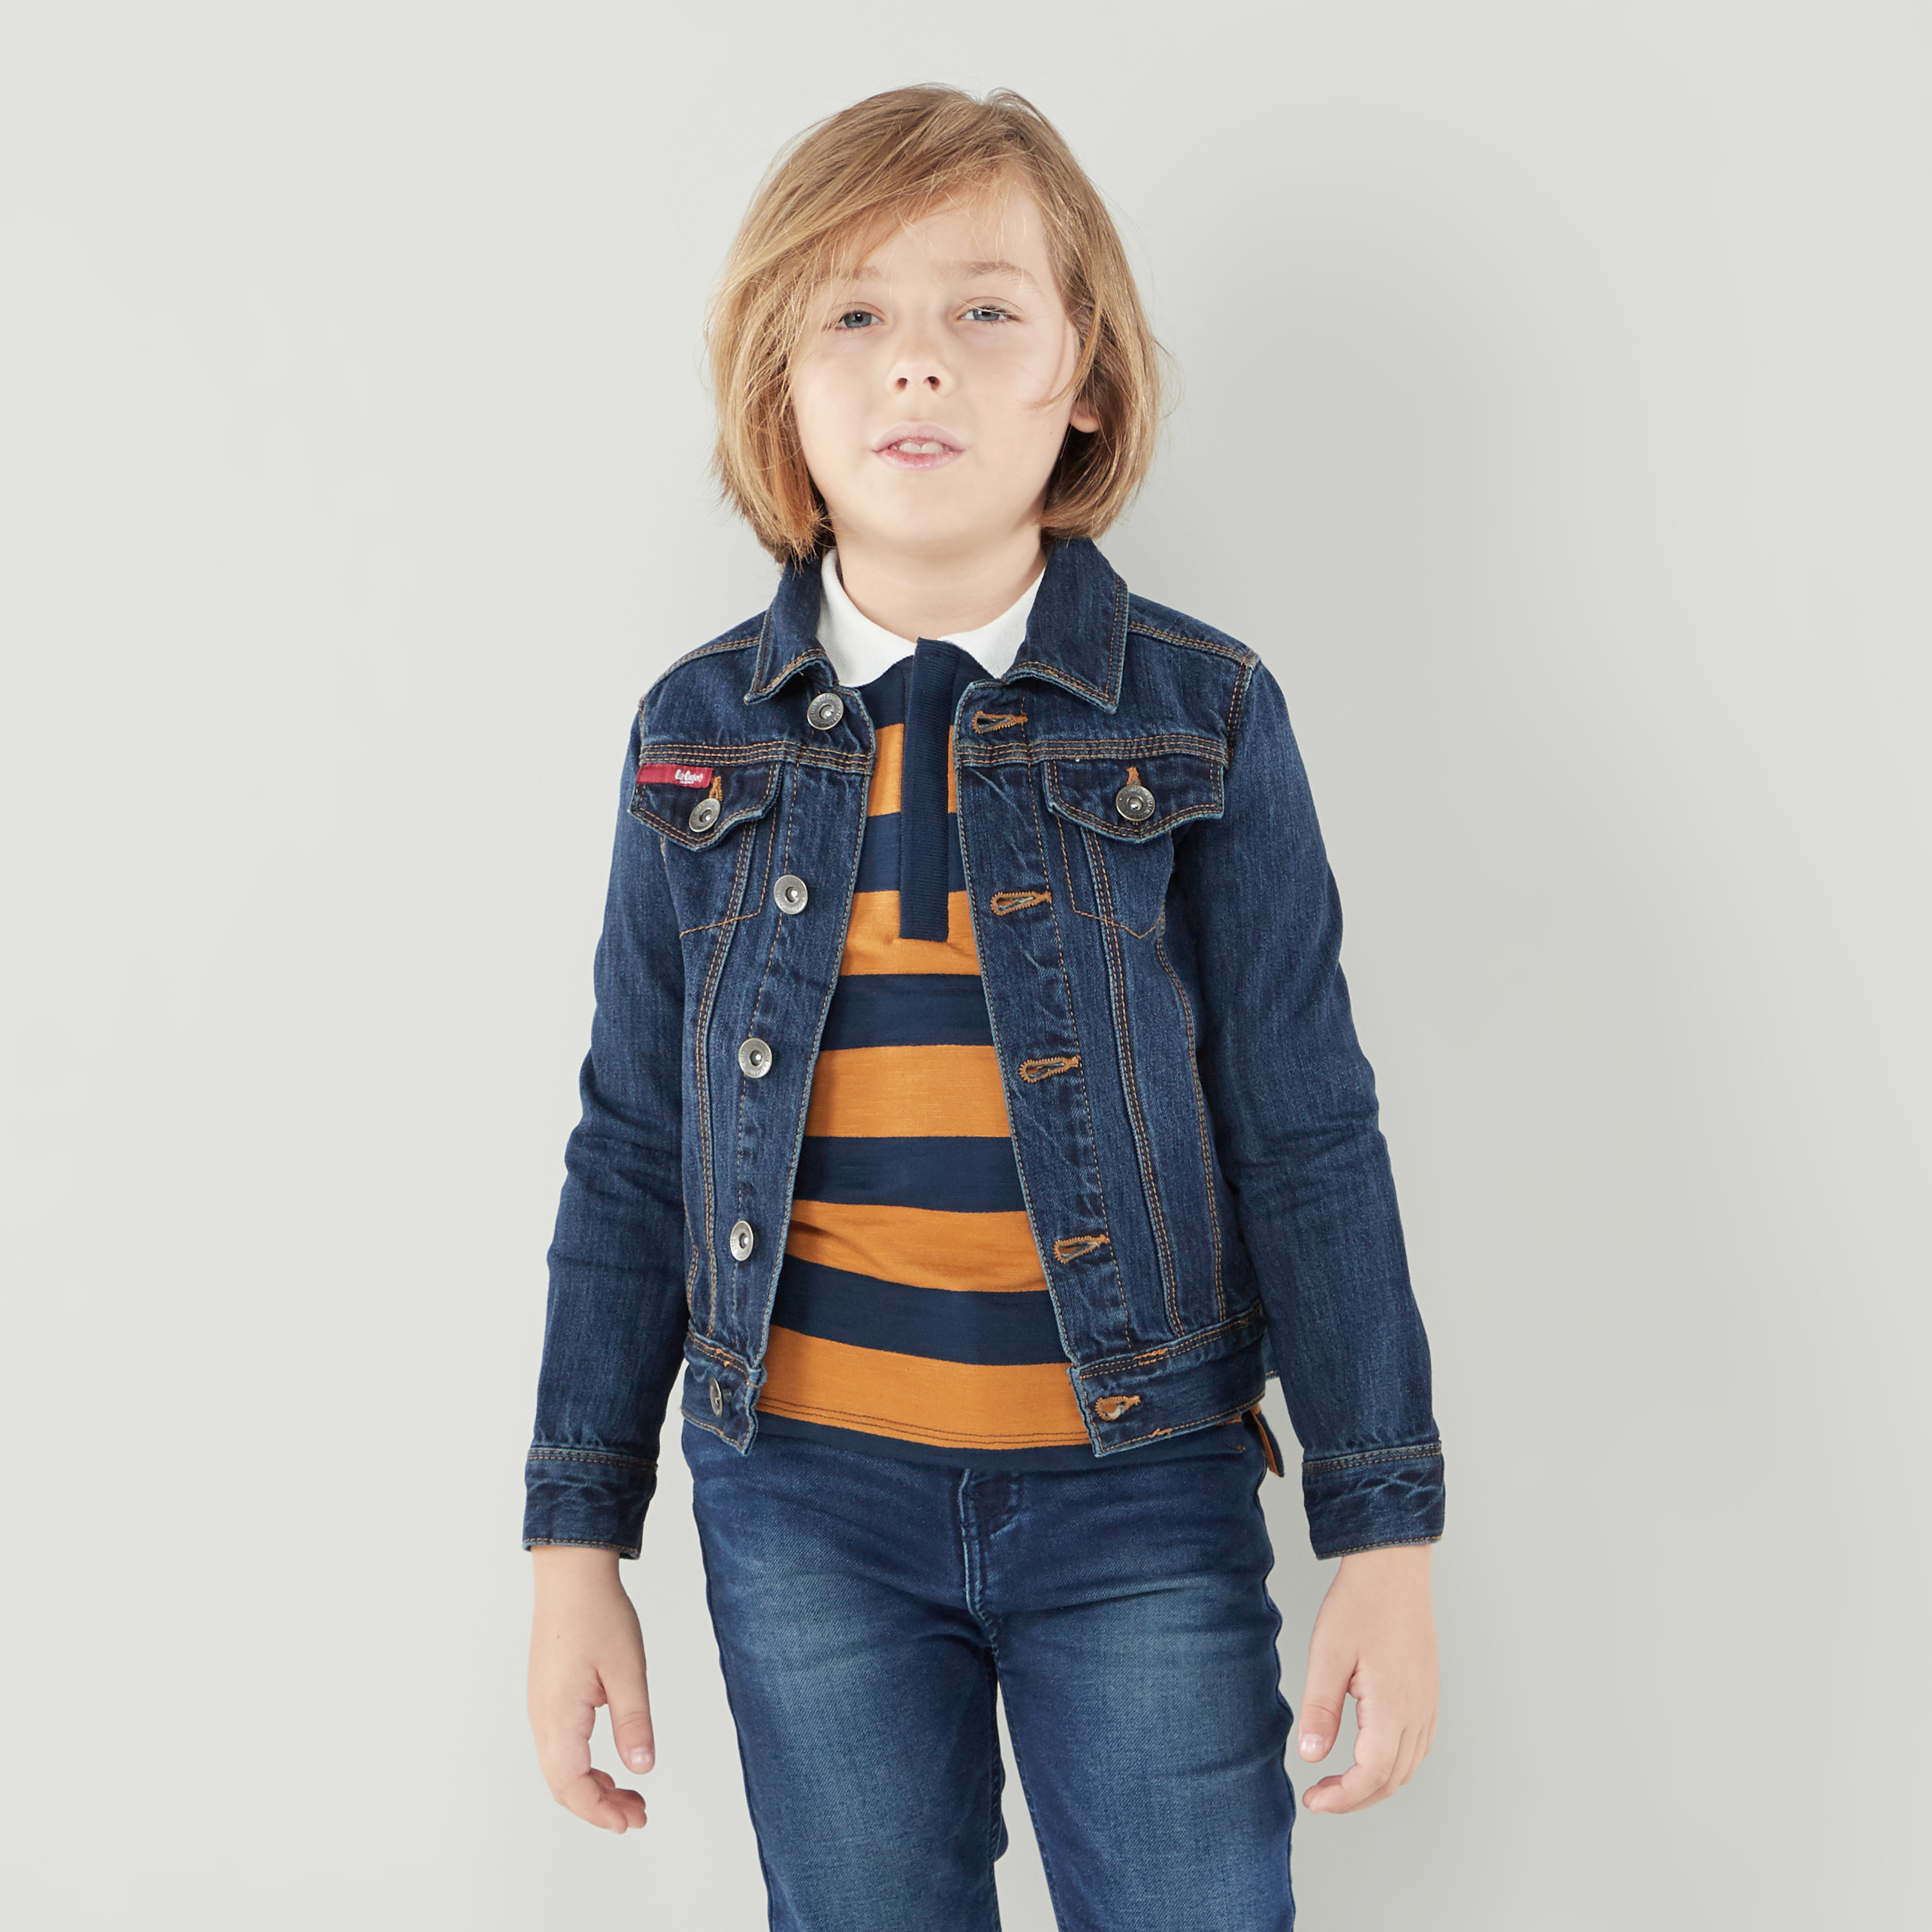 Buy Lee Cooper Denim Jacket with Hood and Pockets Online | Babyshop UAE